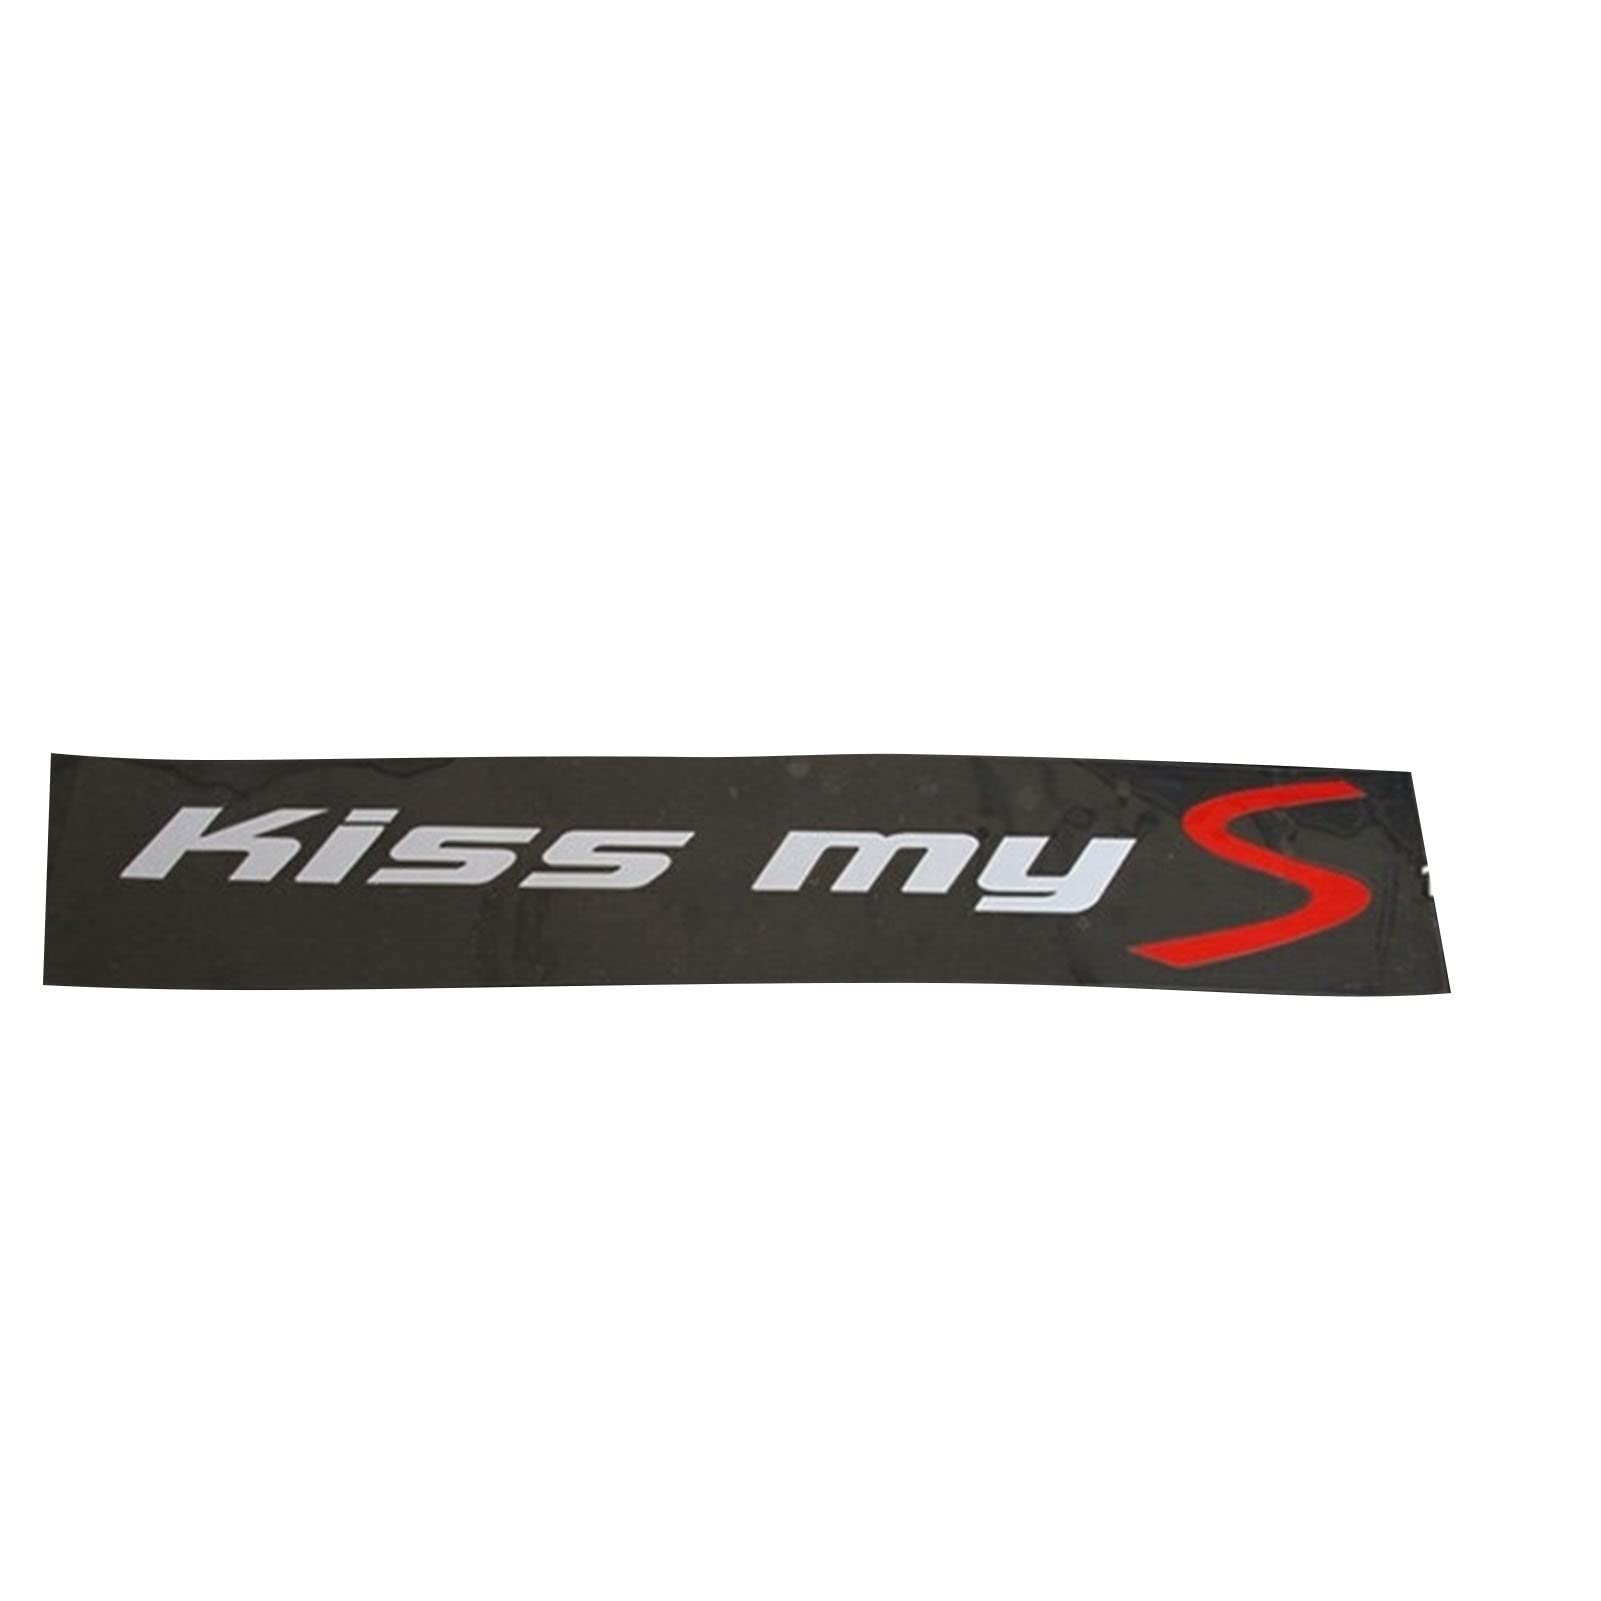 ZhengELE Car Styling Kiss My S Windschutzscheibe Aufkleber Seitenscheibe Reflektierende Aufkleber for Mini Cooper R56 R57 R50 R52 F55 F56 F60 R60 R61 R53 (Color Name : Small Size) von ZhengELE